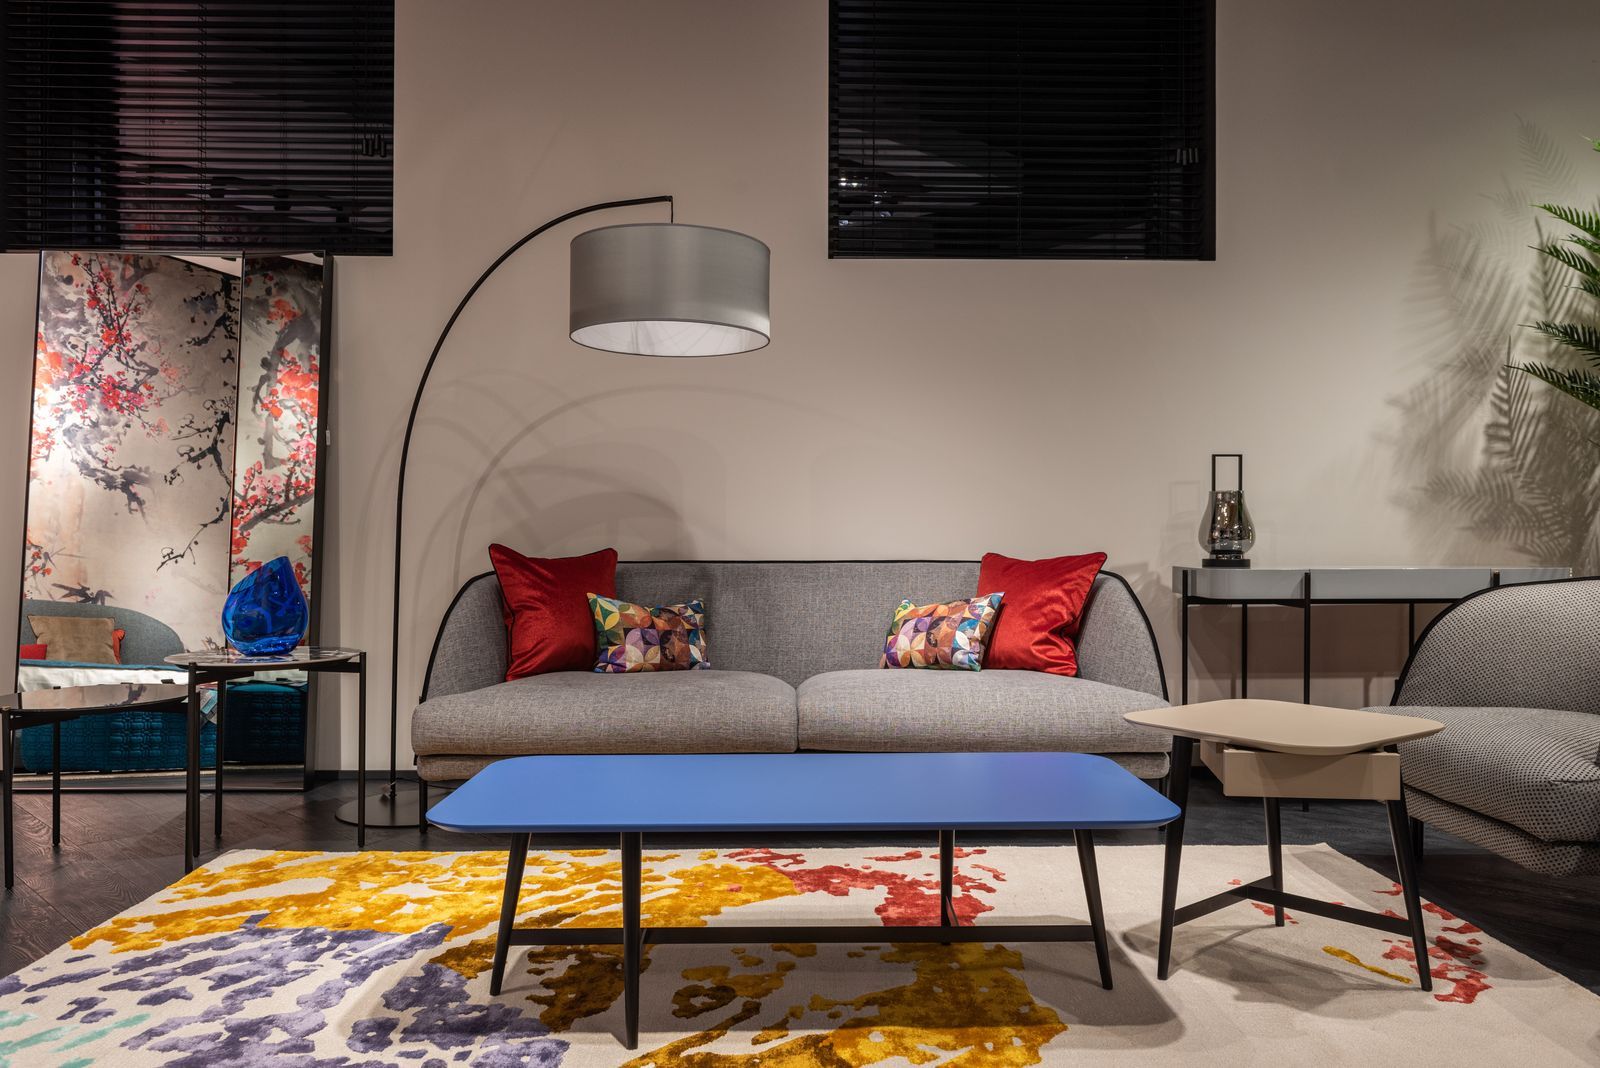 sala de estar d colores neutros con detalles multicolores, cojines rojos, mesita azul, sofá gris